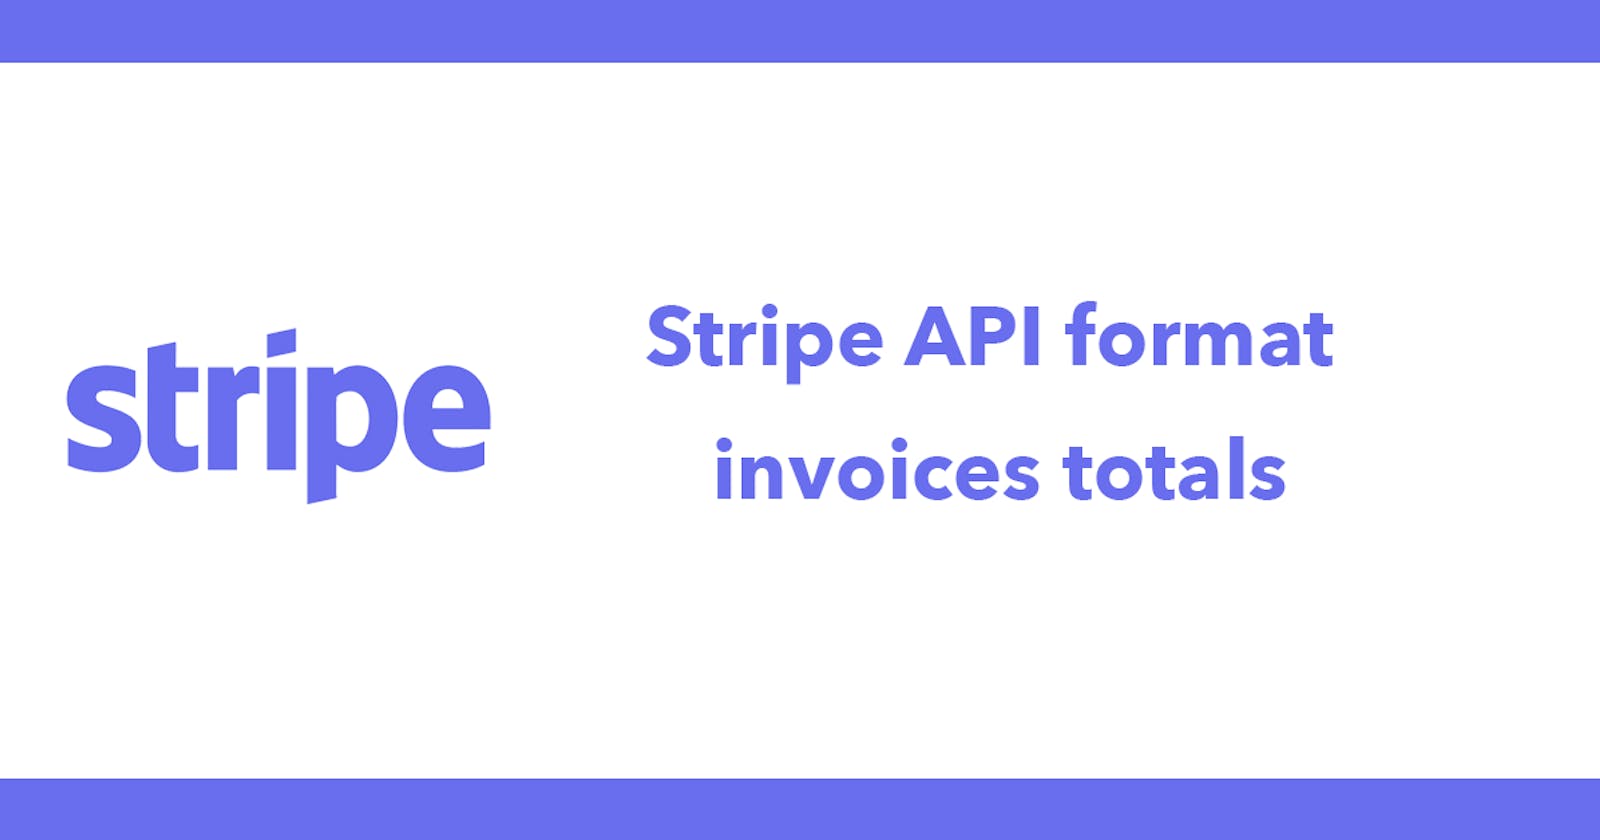 Stripe API format invoices totals